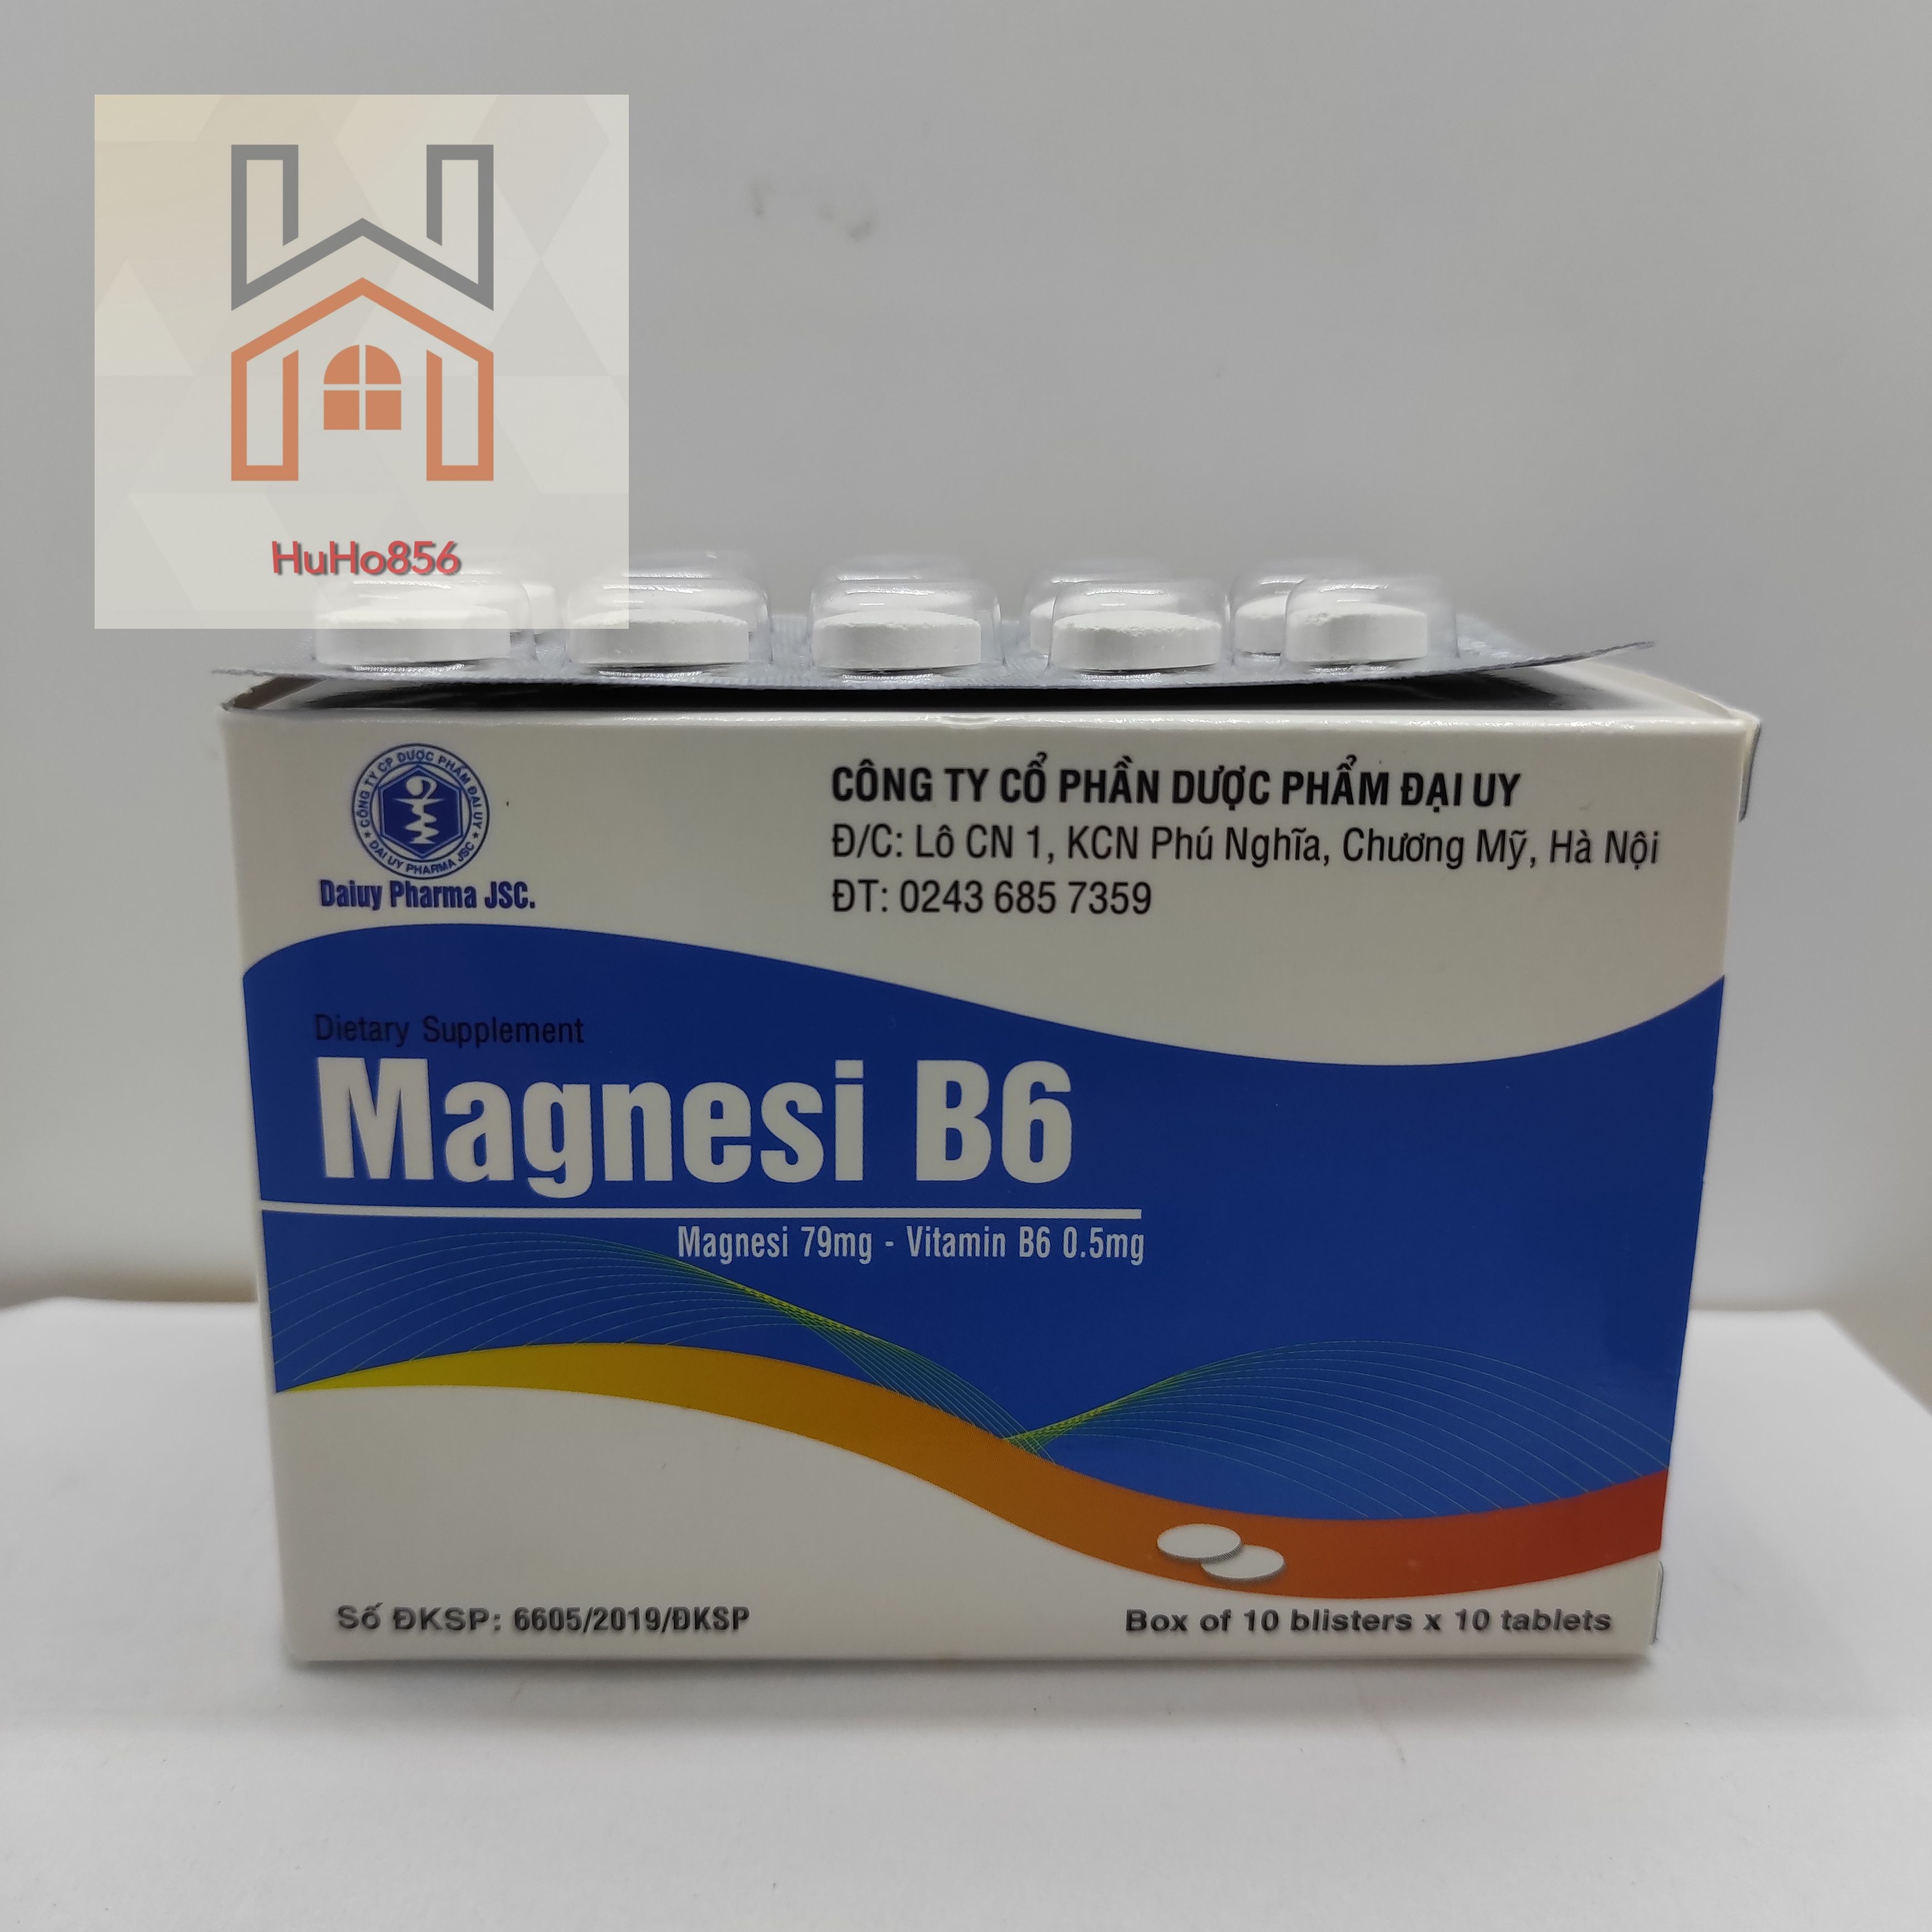 Magnesi B6 hộp 100 viên - Bổ sung magie và vitamin B6 cho cơ thể